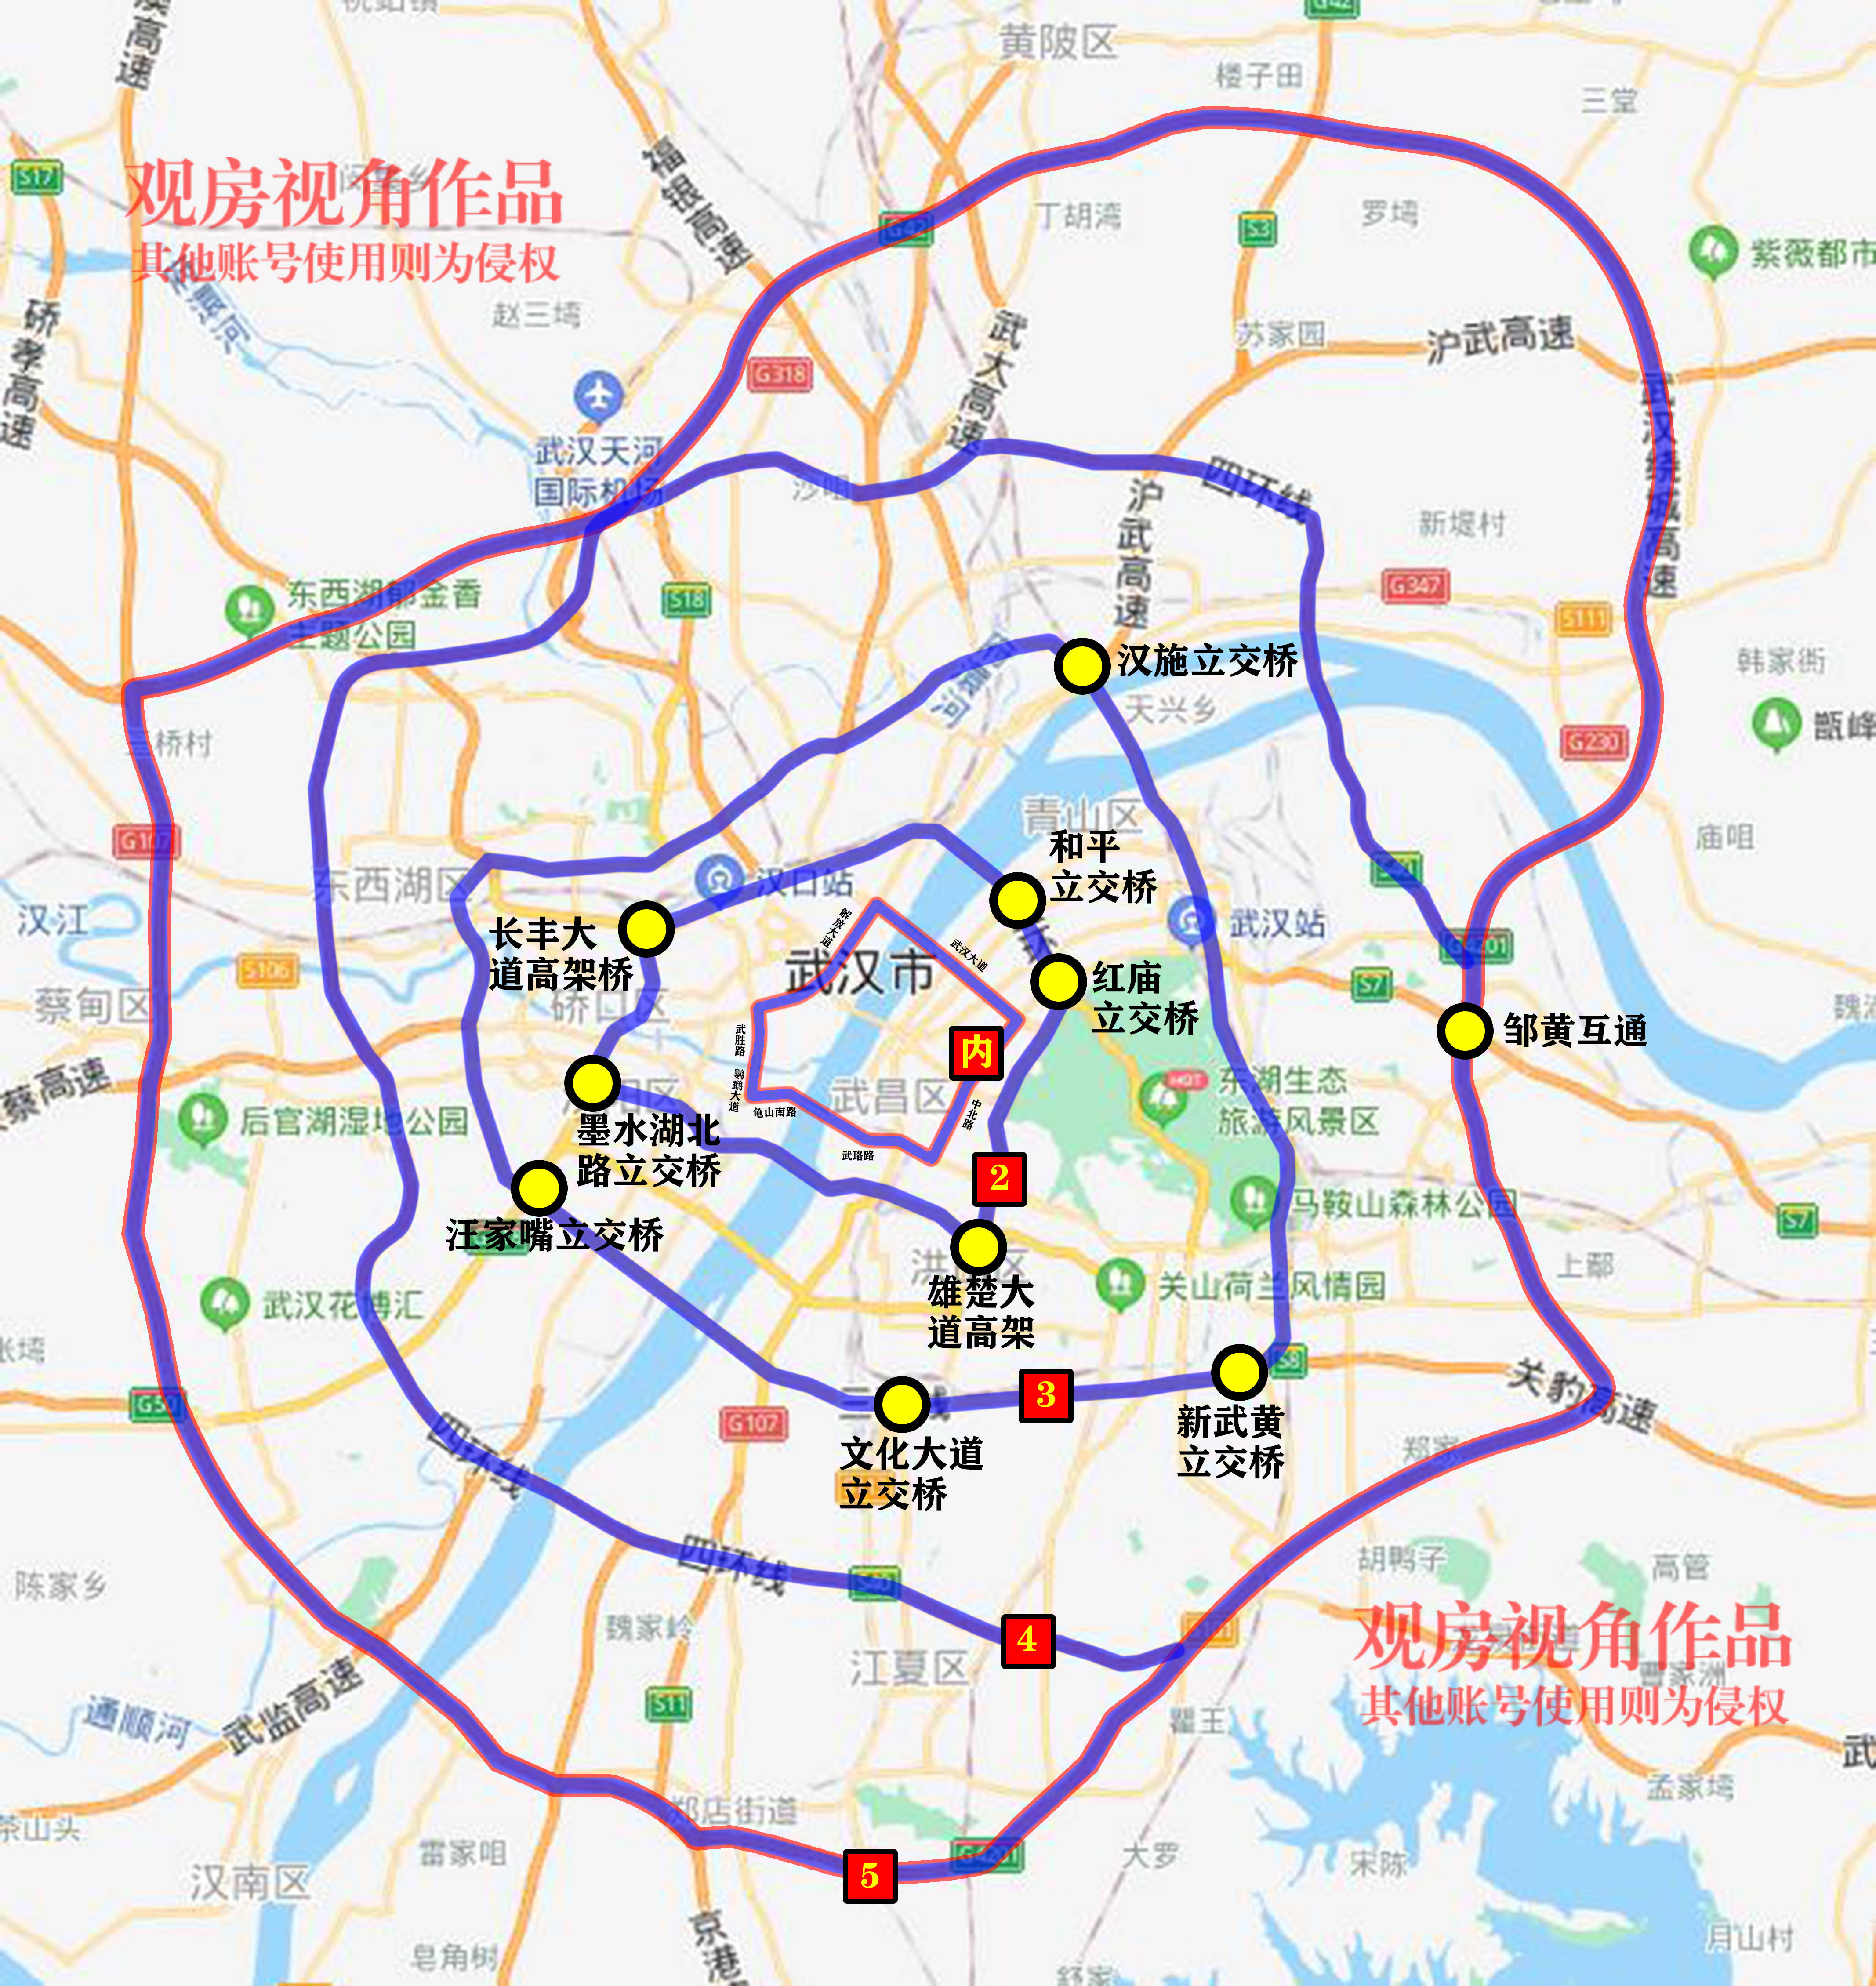 目前,湖北省武汉市共建成内环,二环,三环,四环,绕城高速等5条环线,总